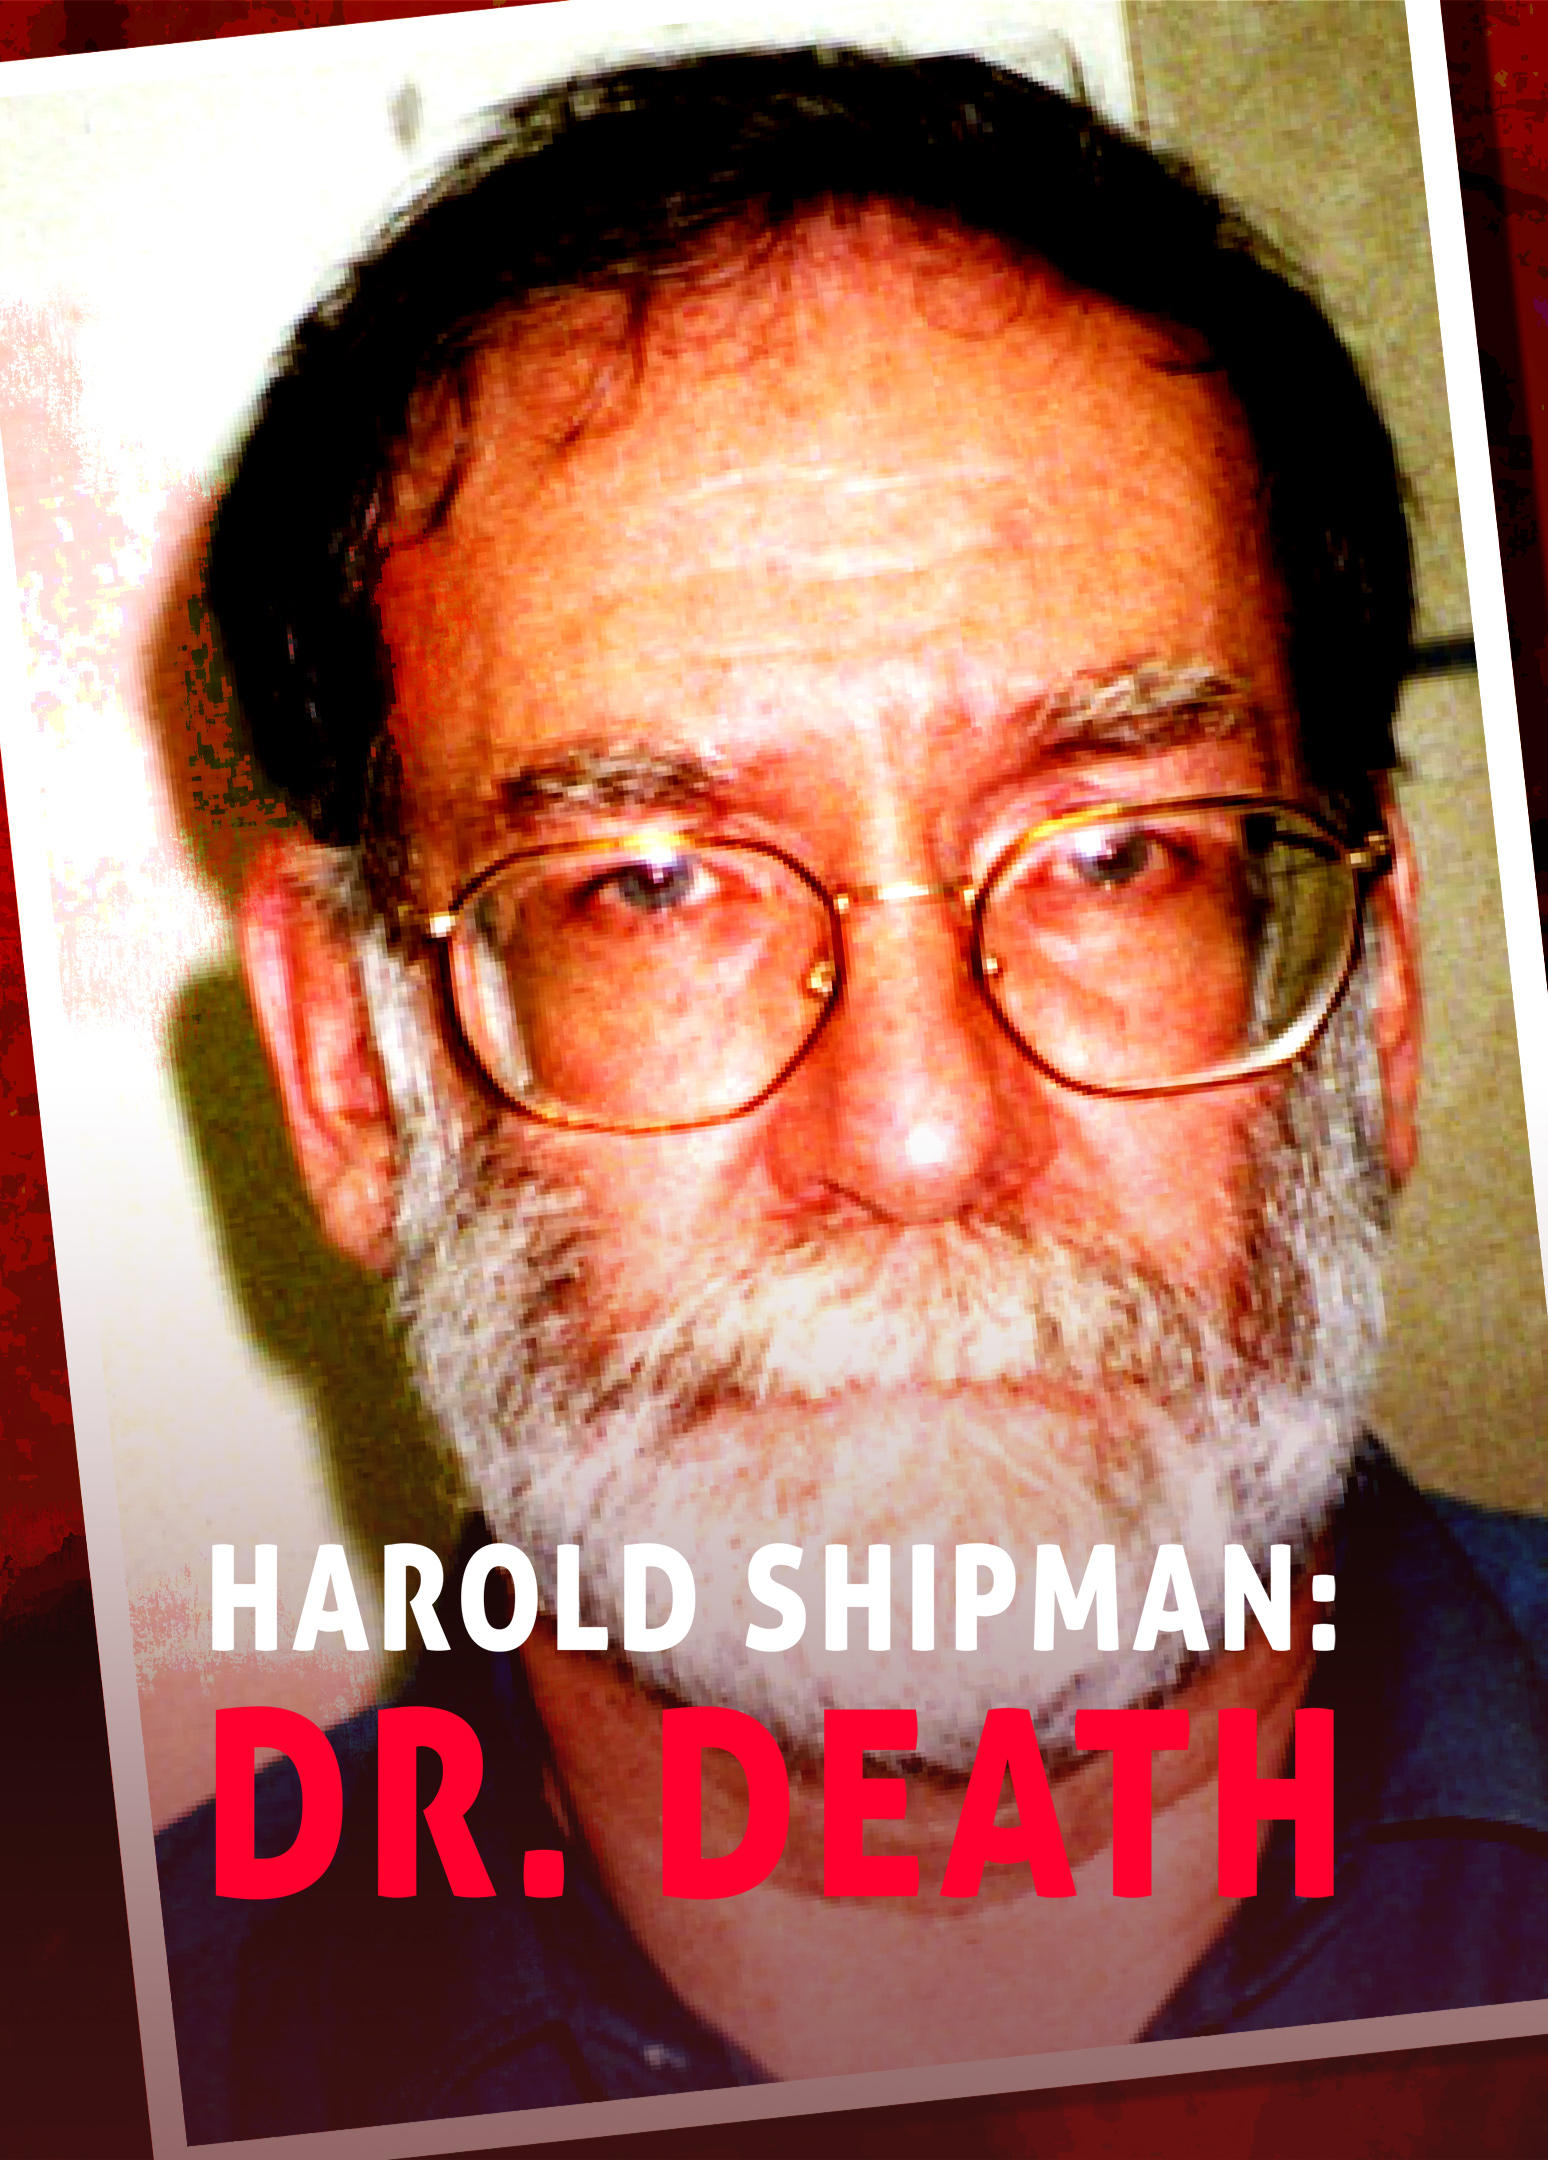 Harold Shipman: Dr. Death